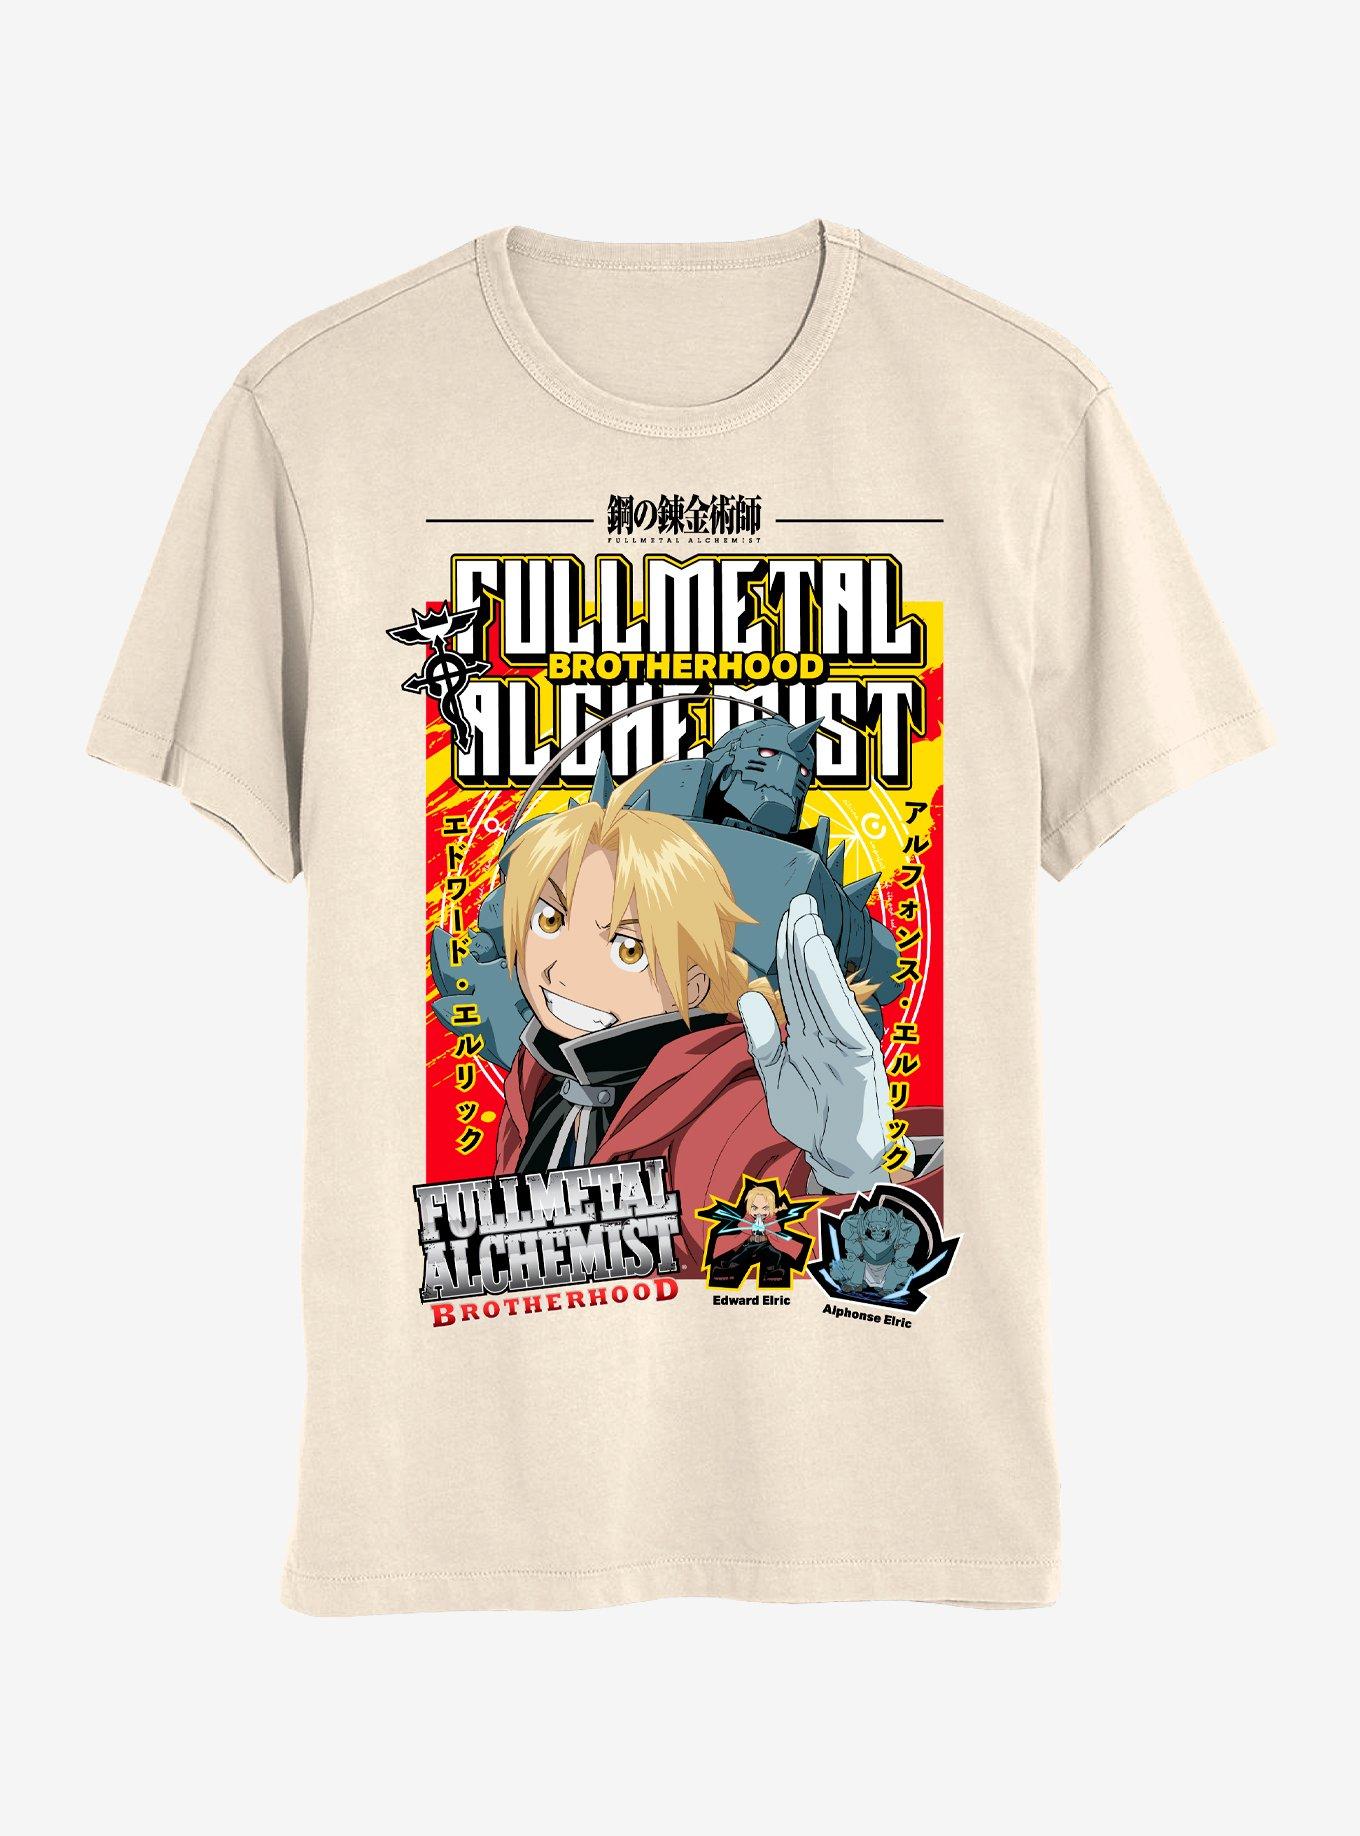 Full Metal Alchemist: Brotherhood Text Collage Boyfriend Fit Girls T-Shirt, MULTI, hi-res